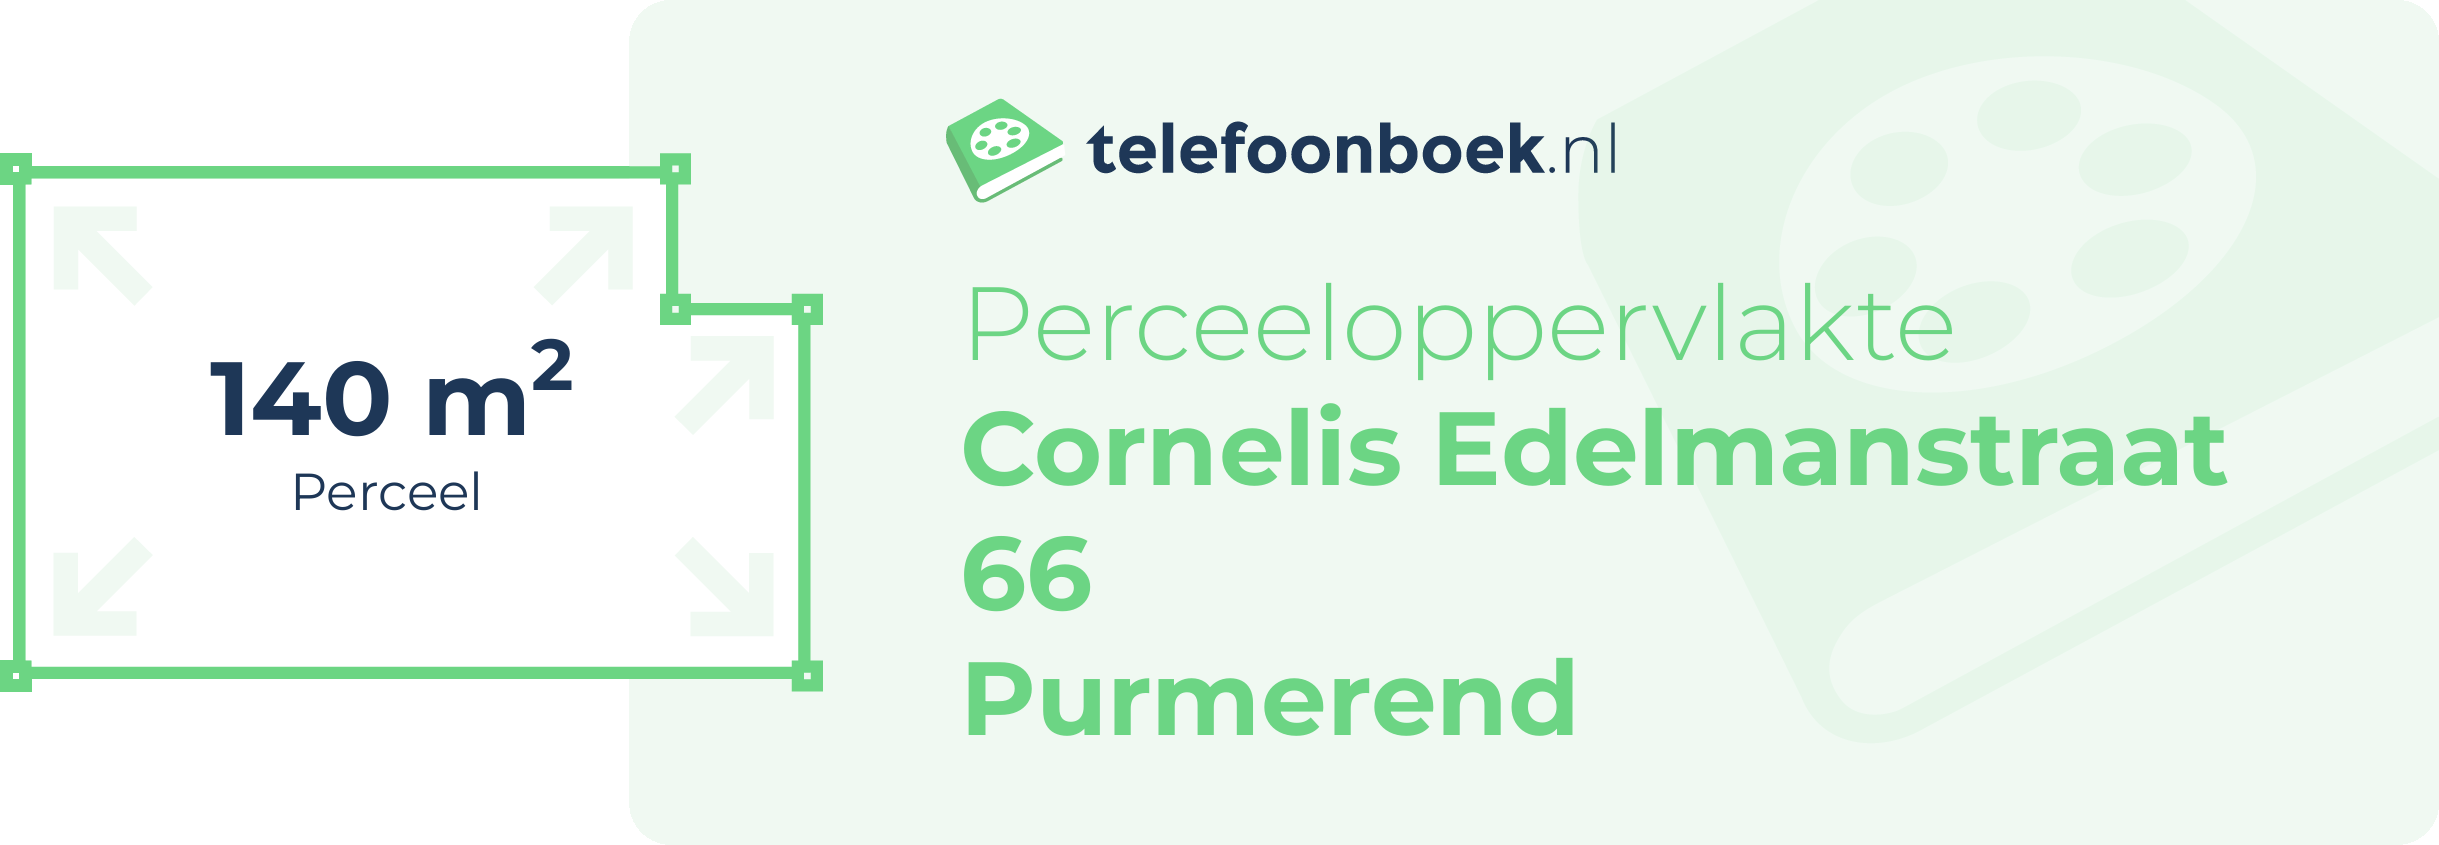 Perceeloppervlakte Cornelis Edelmanstraat 66 Purmerend